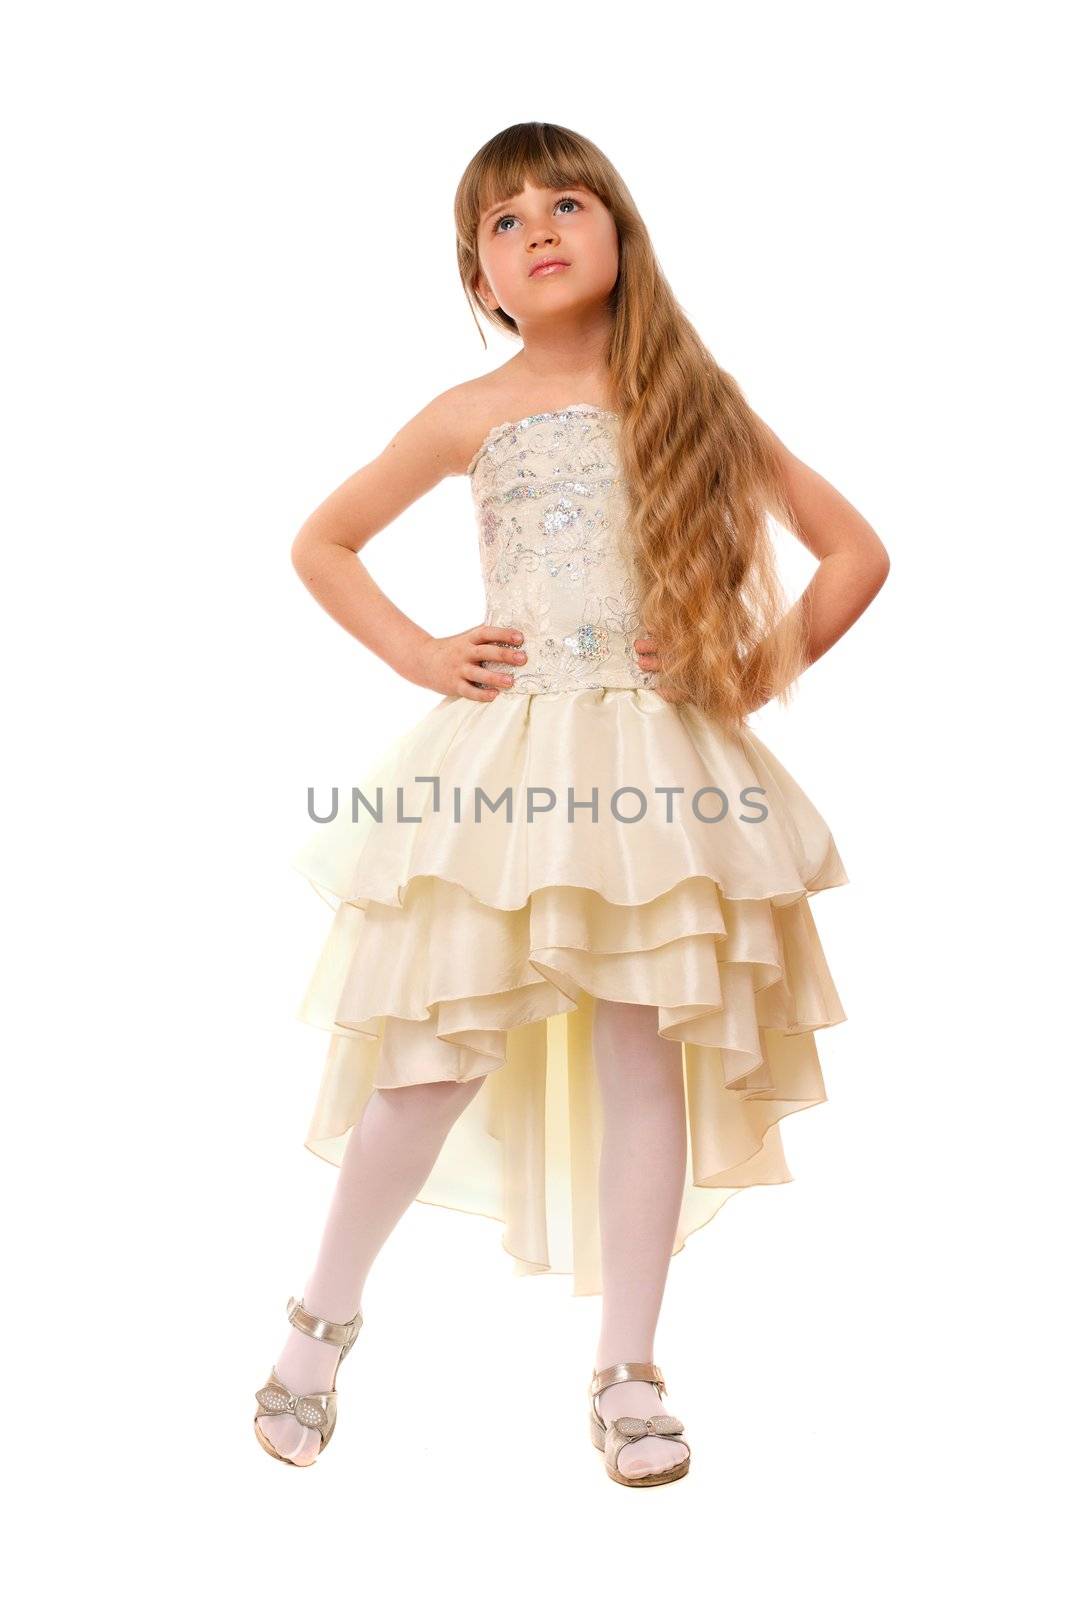 Lovely little girl in a beige dress by acidgrey